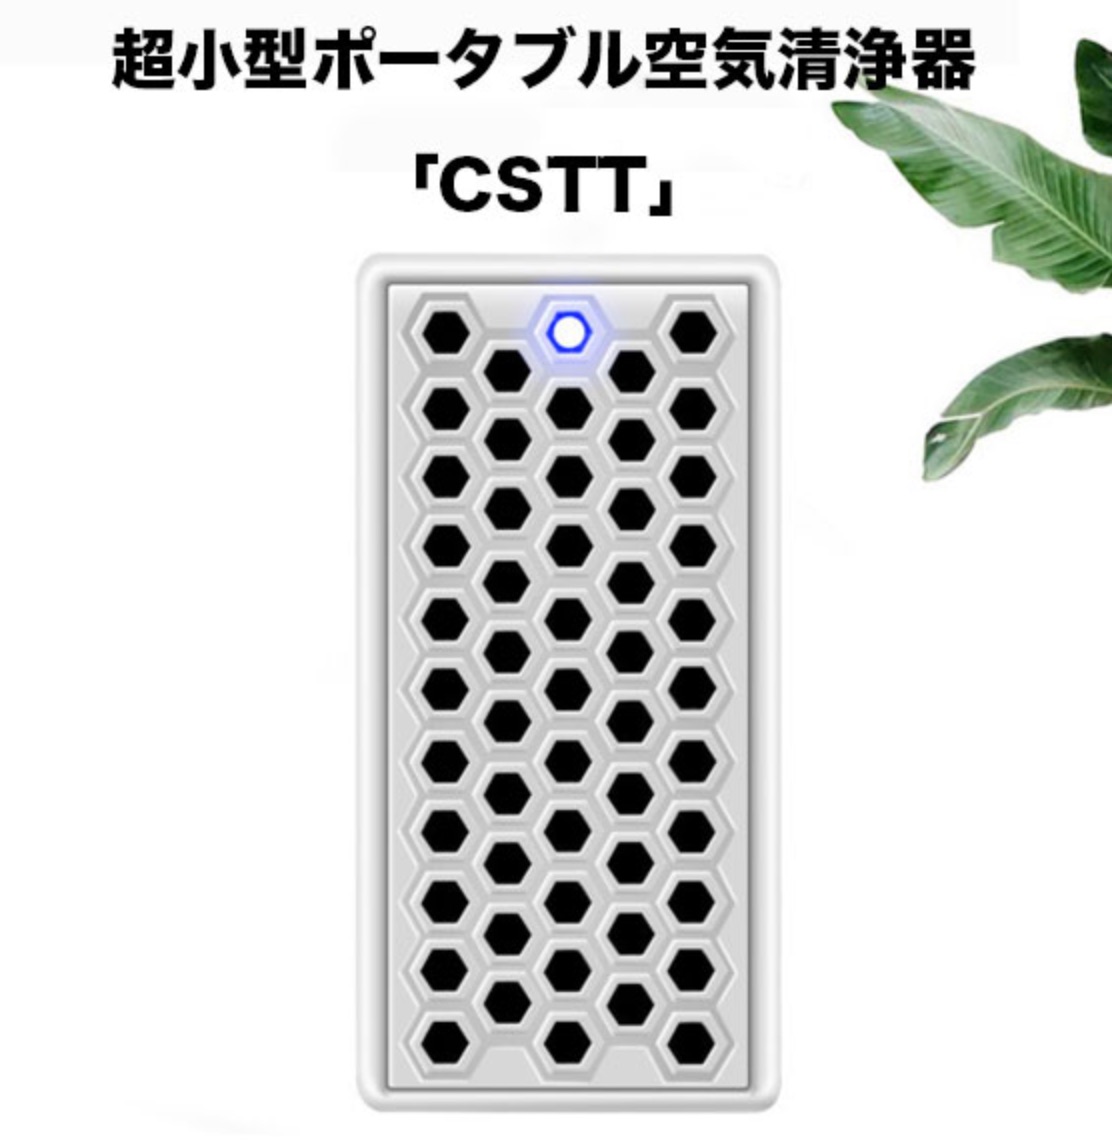 超小型空気清浄器「CSTT」